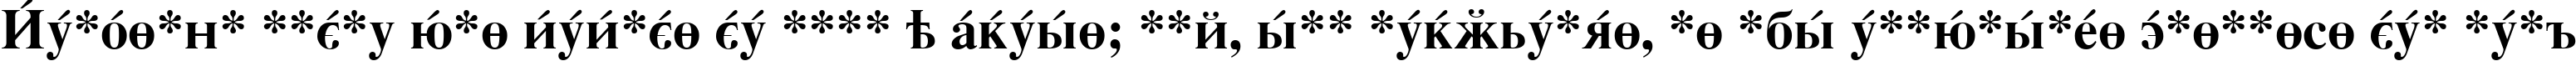 Пример написания шрифтом CyrillicSerif Bold текста на испанском